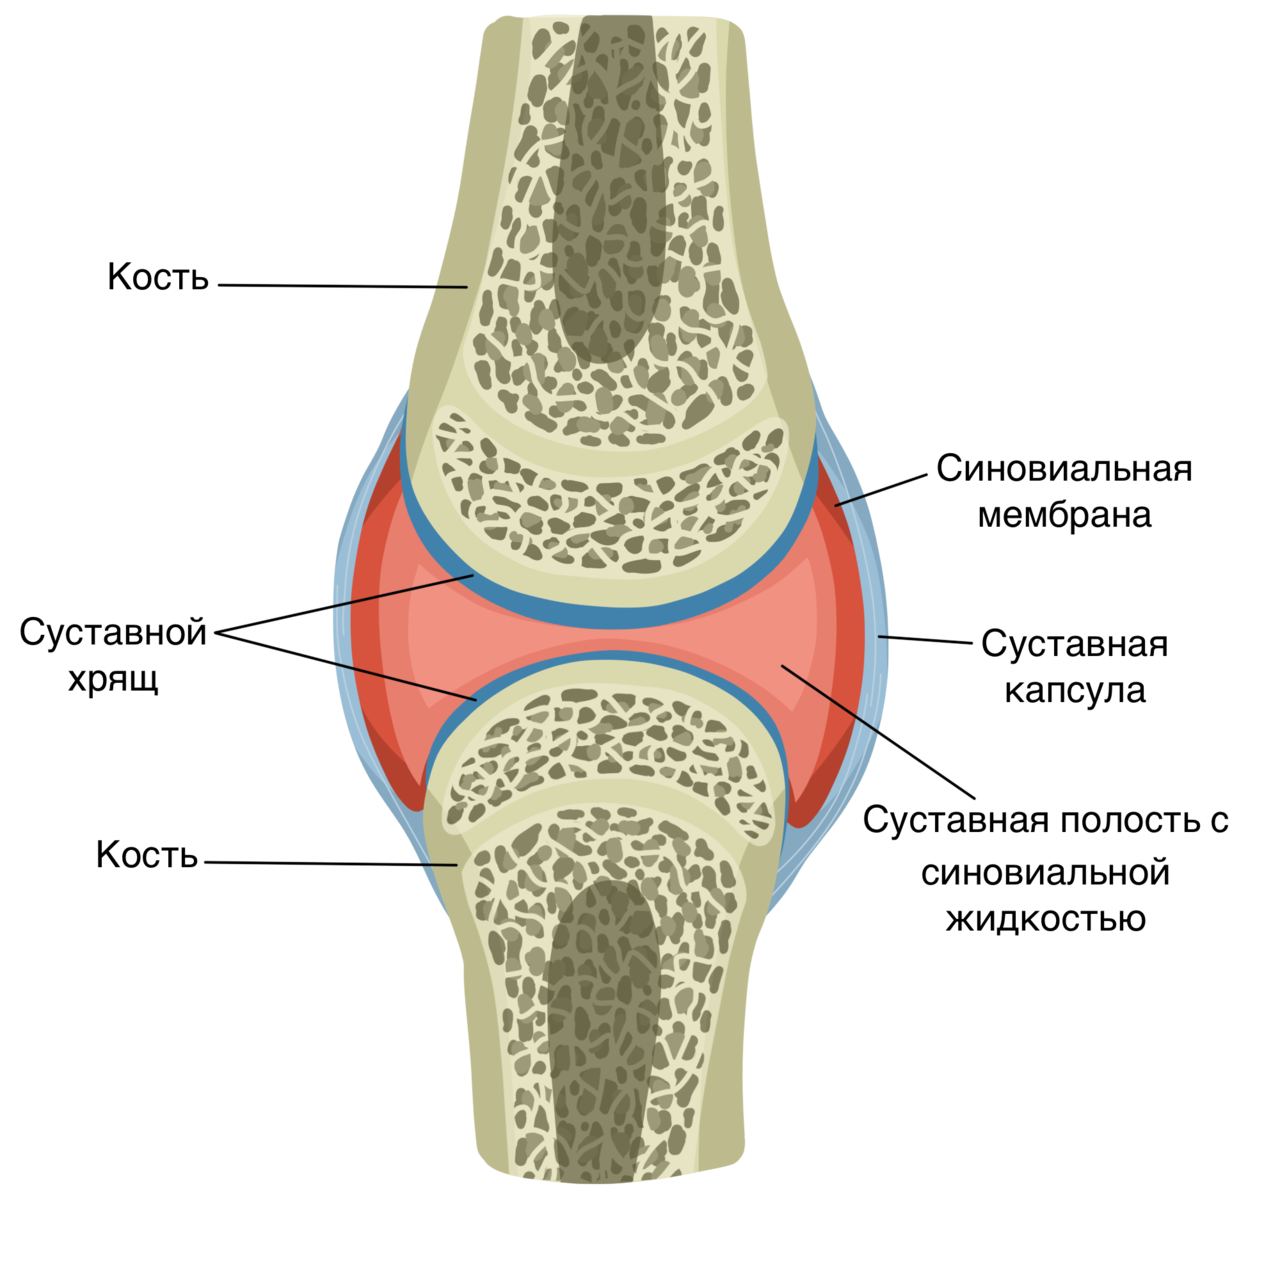 Признаком возрастных изменений костей является. Строение сустава суставной хрящ. Схематическое строение сустава. Строение костей коленного сустава. Синовиальная мембрана суставной капсулы.